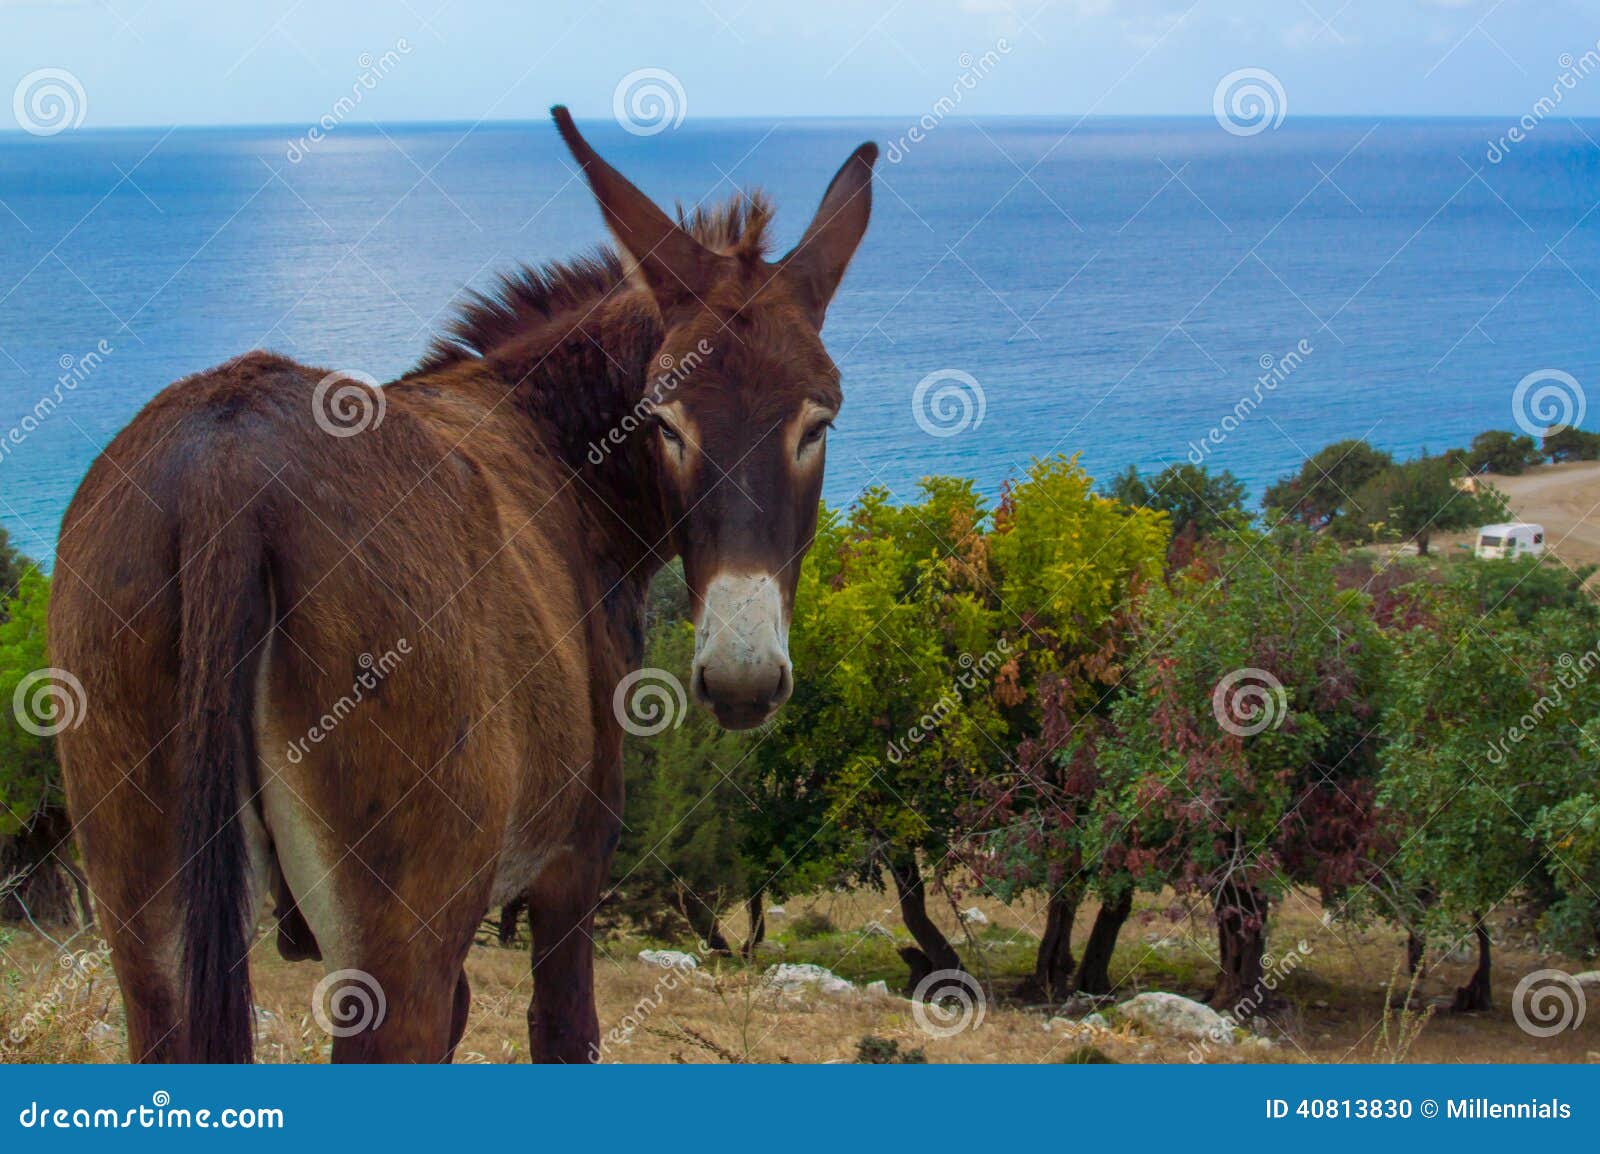 cyprus donkey